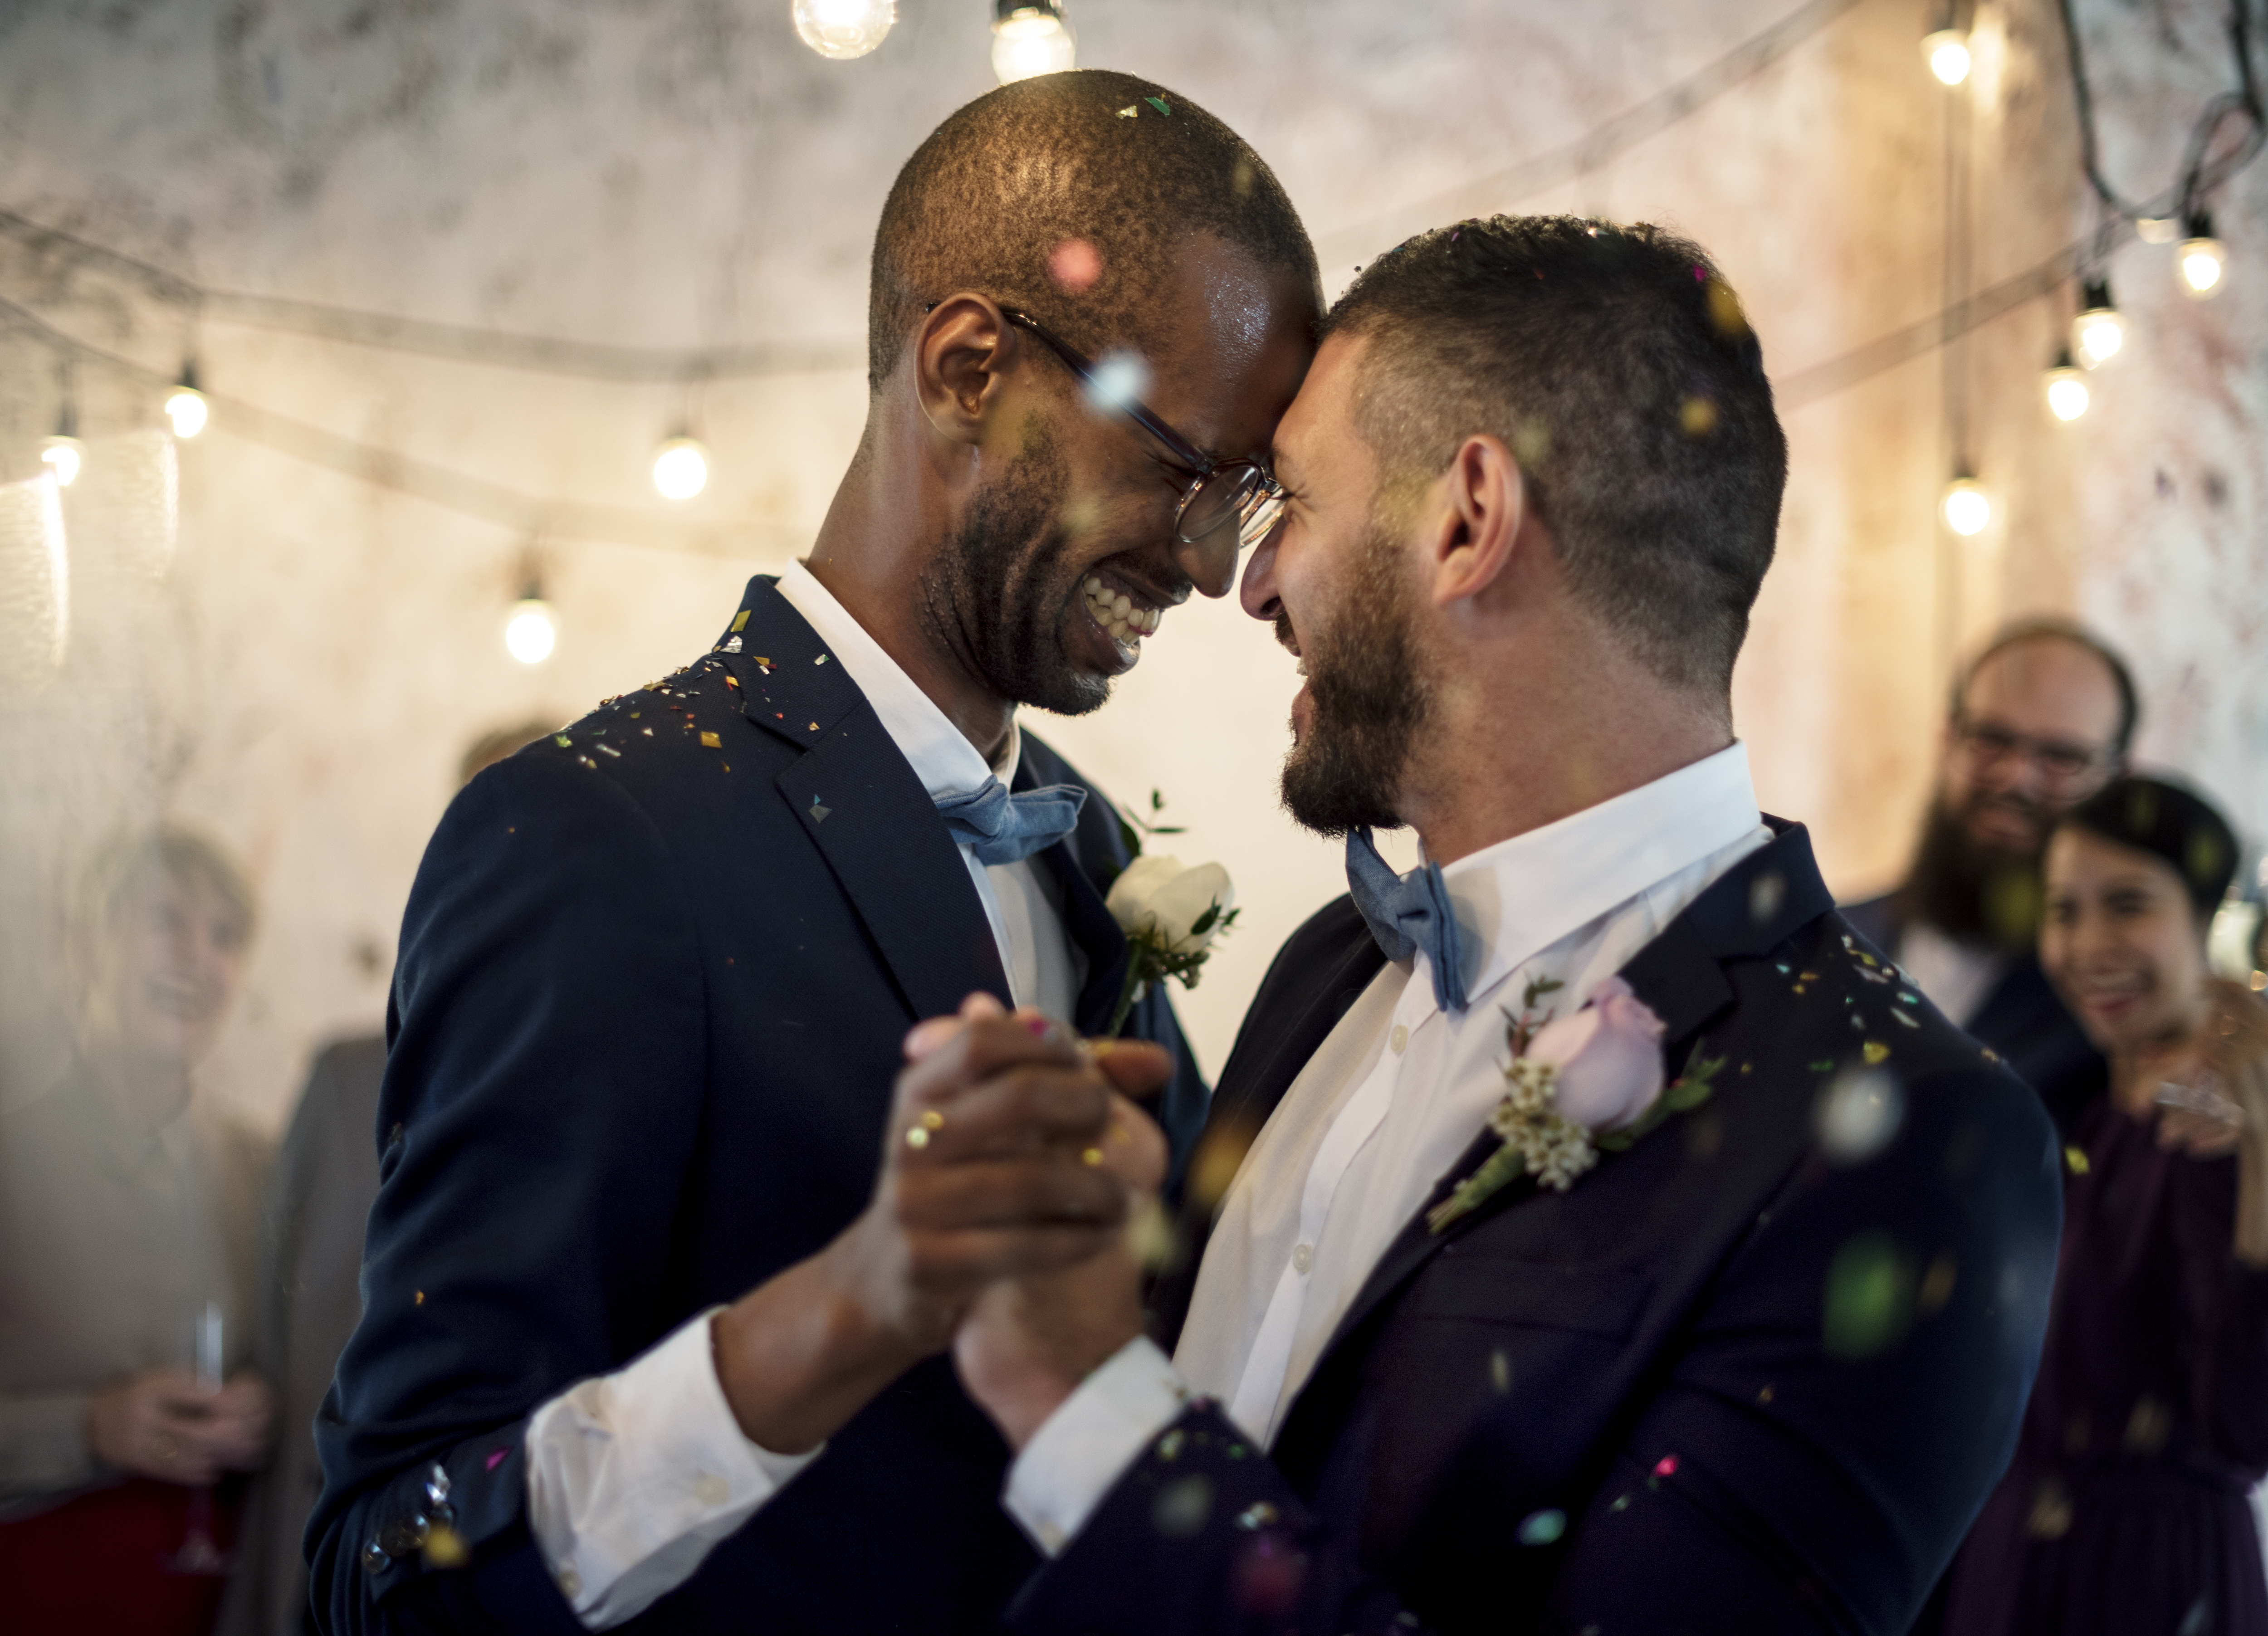 Une photo en gros plan d'un couple gay fraichement marié | Source : Shutterstock